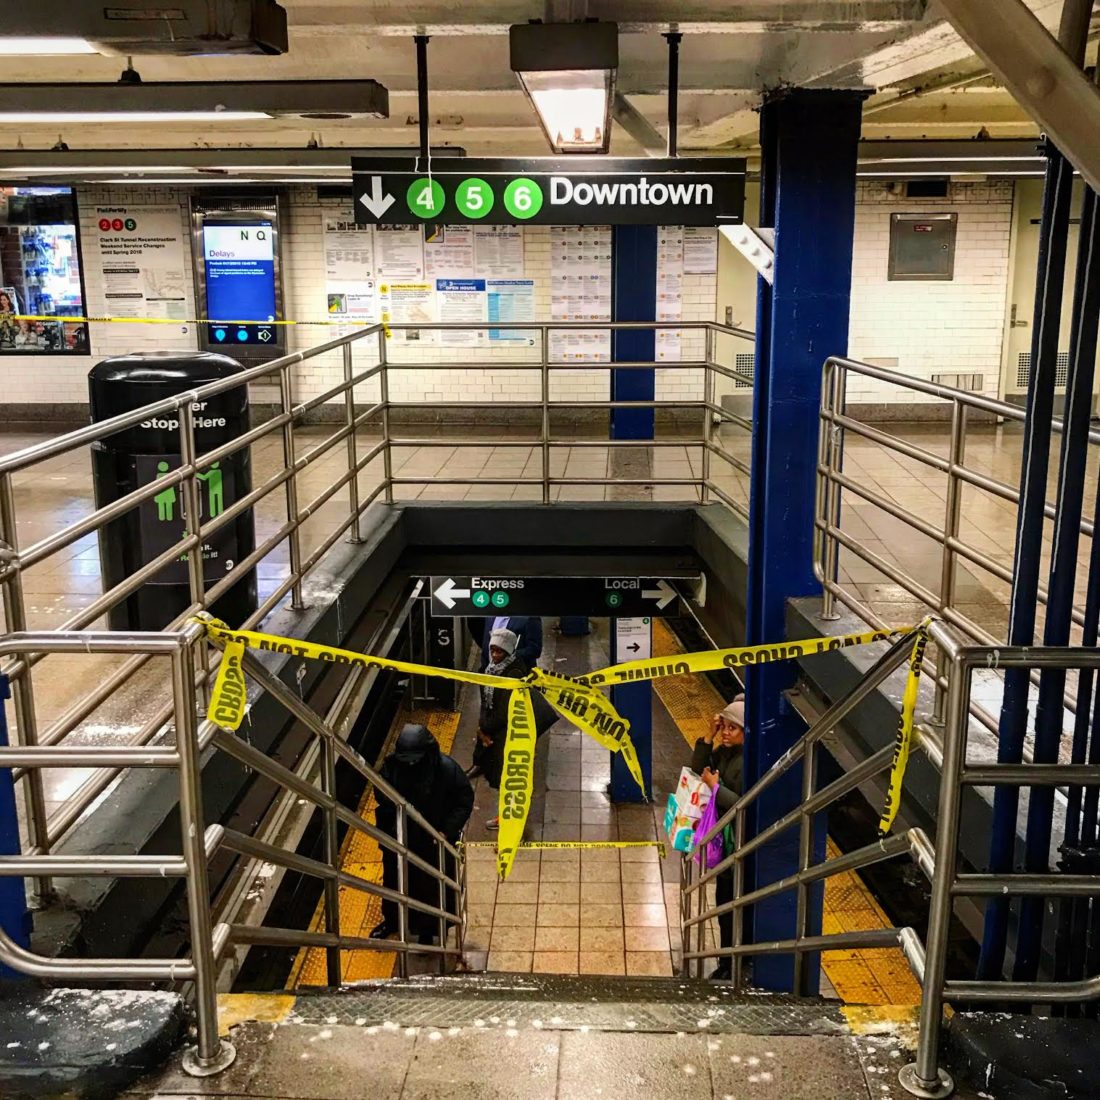 Beázás miatt zárva New York egyik fontos metróállomása. Fotó: Vitézy Dávid 